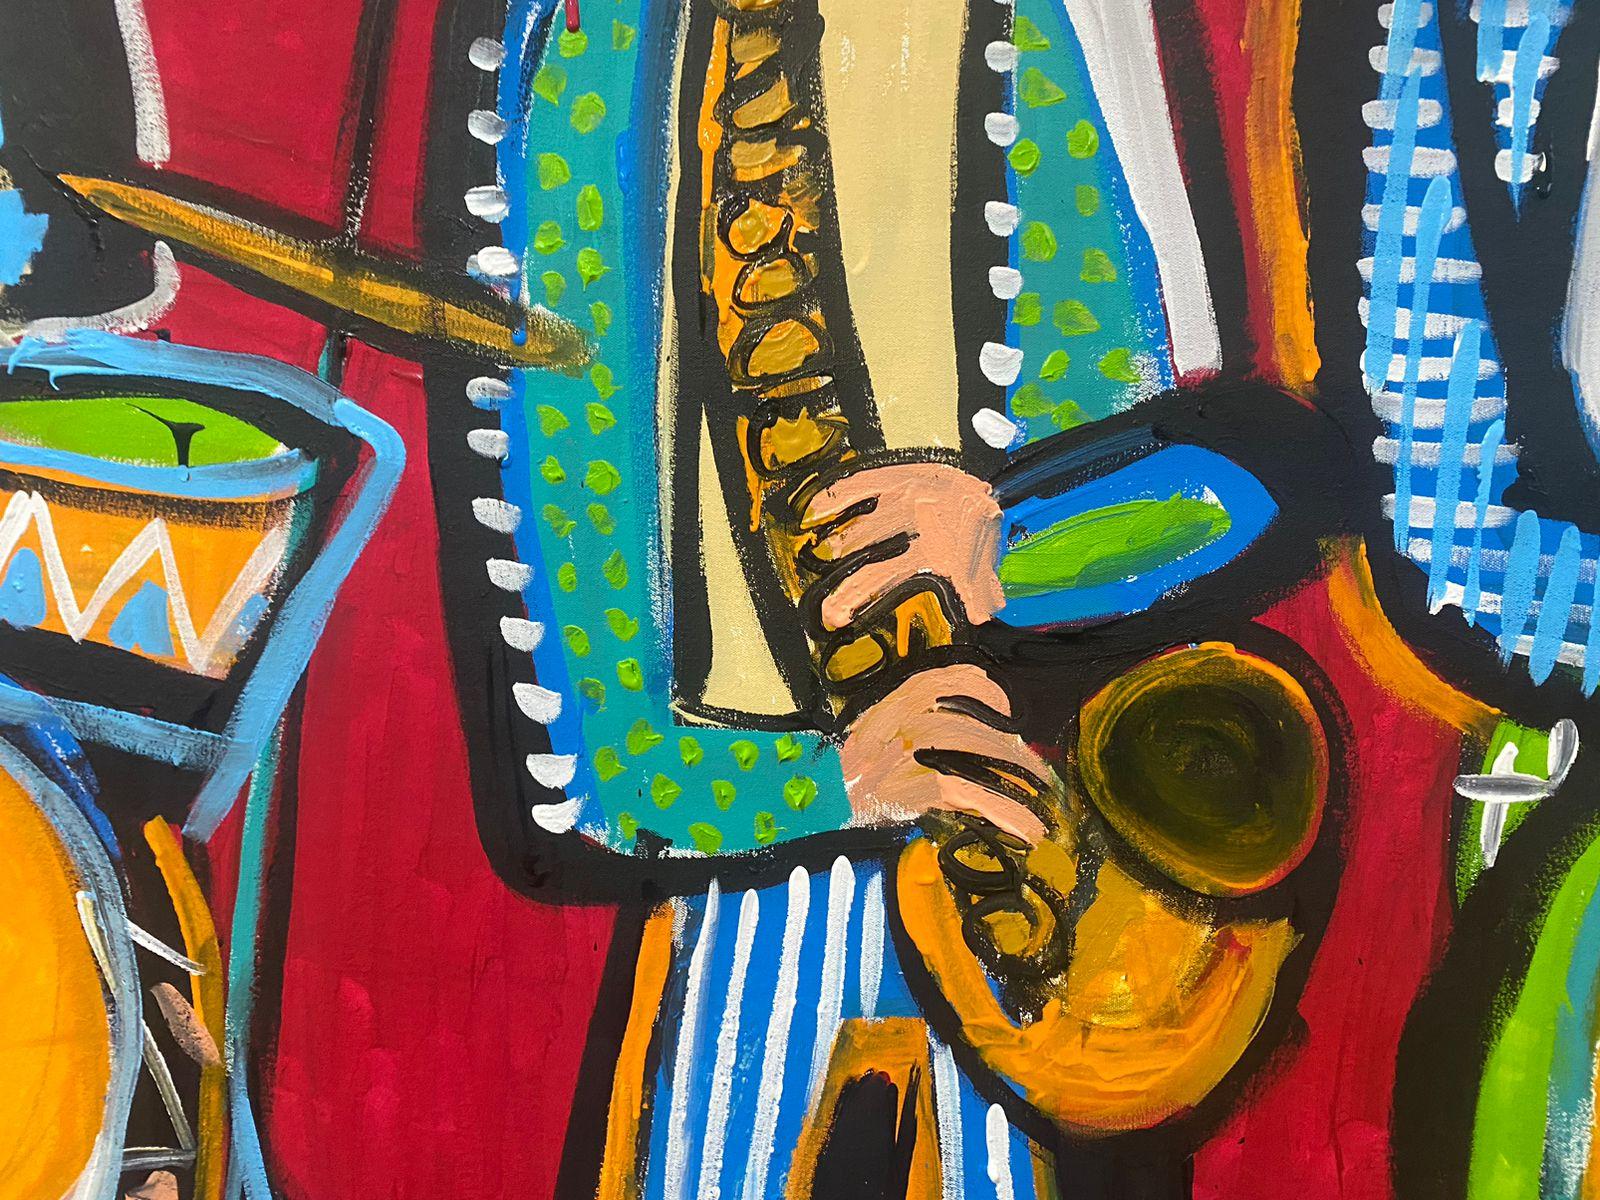 Art contemporain, peinture abstraite
Acrylique sur toile
150x200cm
Signé 




A propos de l'artiste
Enrique Pichardo (Mexico, 1973) est diplômé de l'Escuela Nacional de Pintura, Escultura y Grabado (ENPEG) 